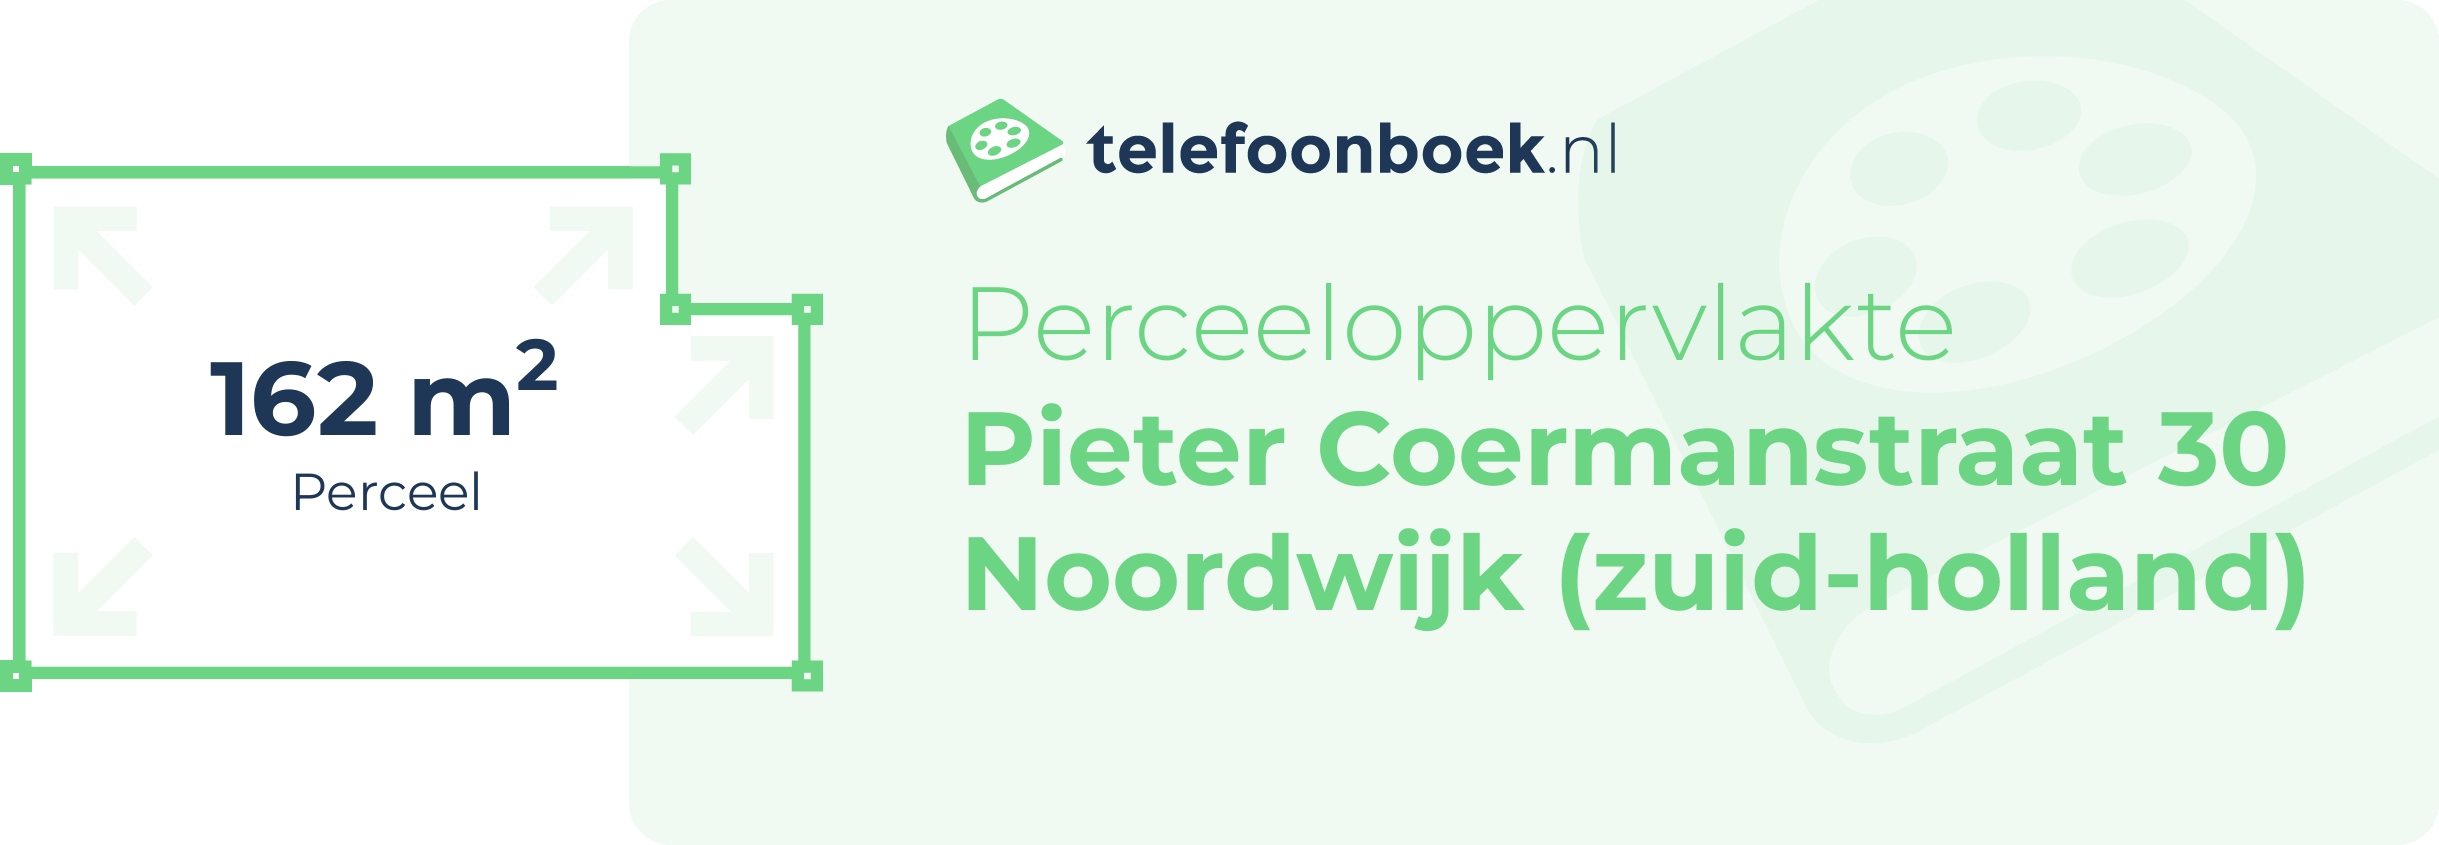 Perceeloppervlakte Pieter Coermanstraat 30 Noordwijk (Zuid-Holland)